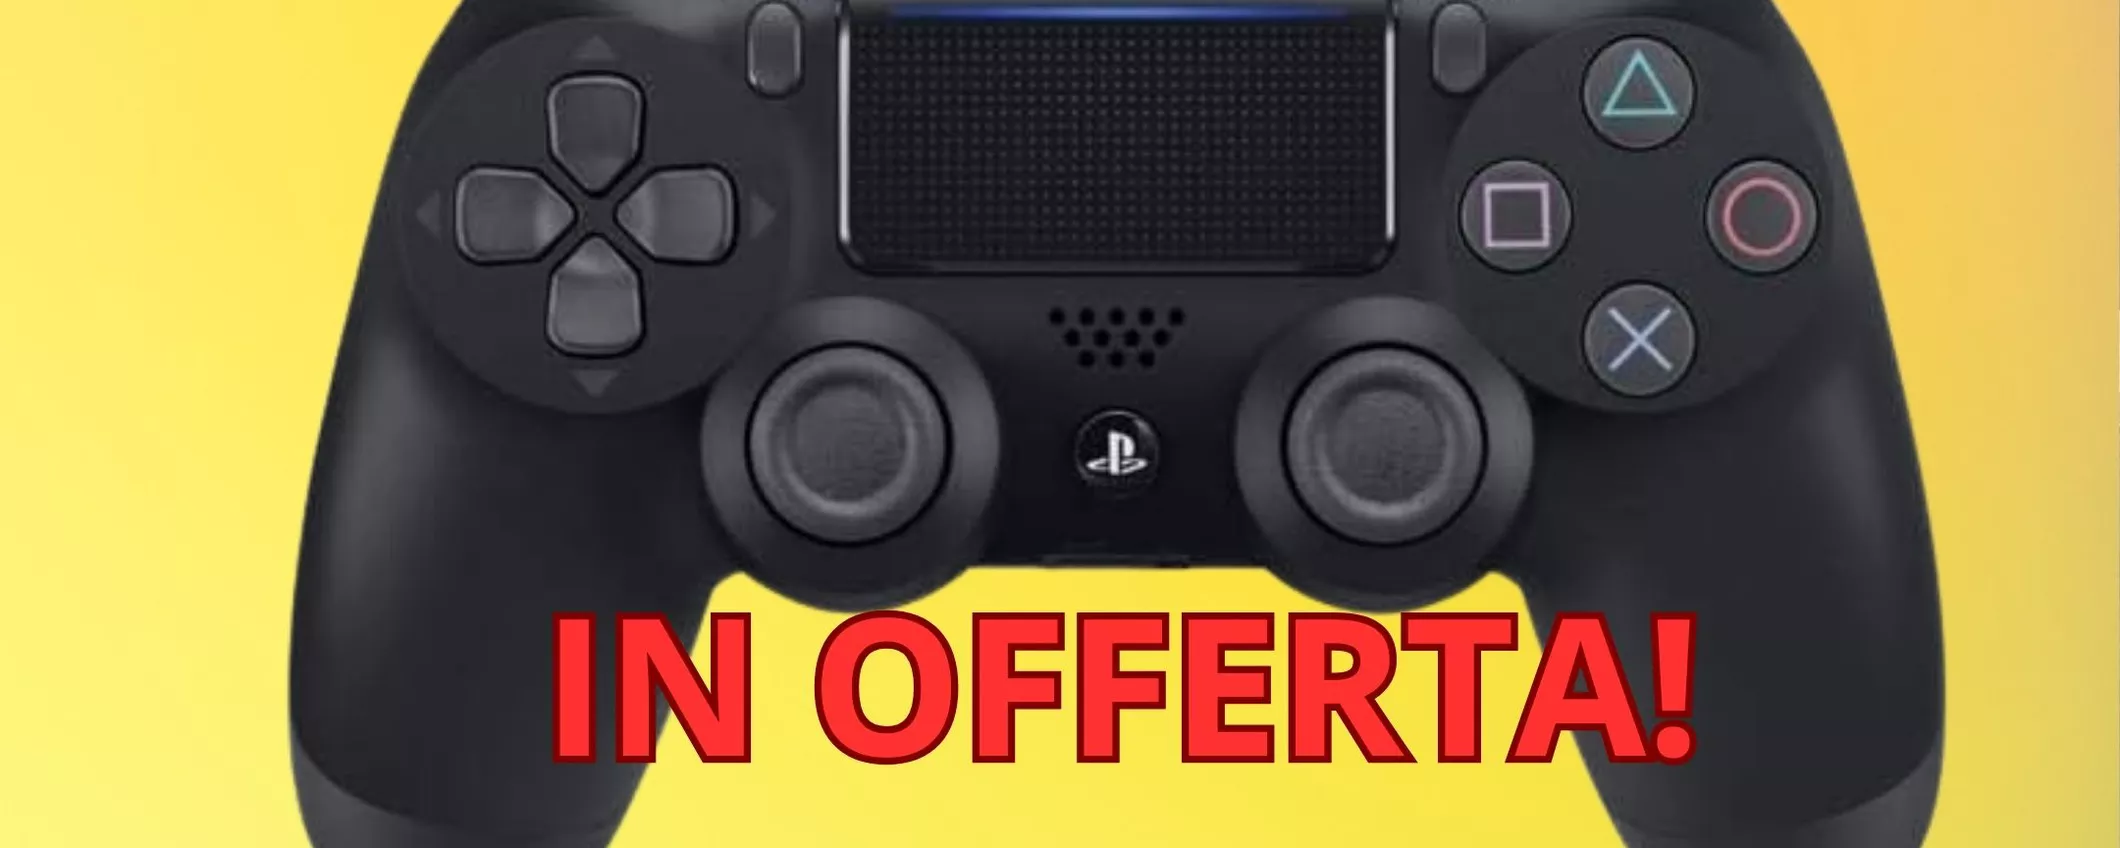 Acquista questo strepitoso Controller Dualshock PS4 a soli 59 euro!